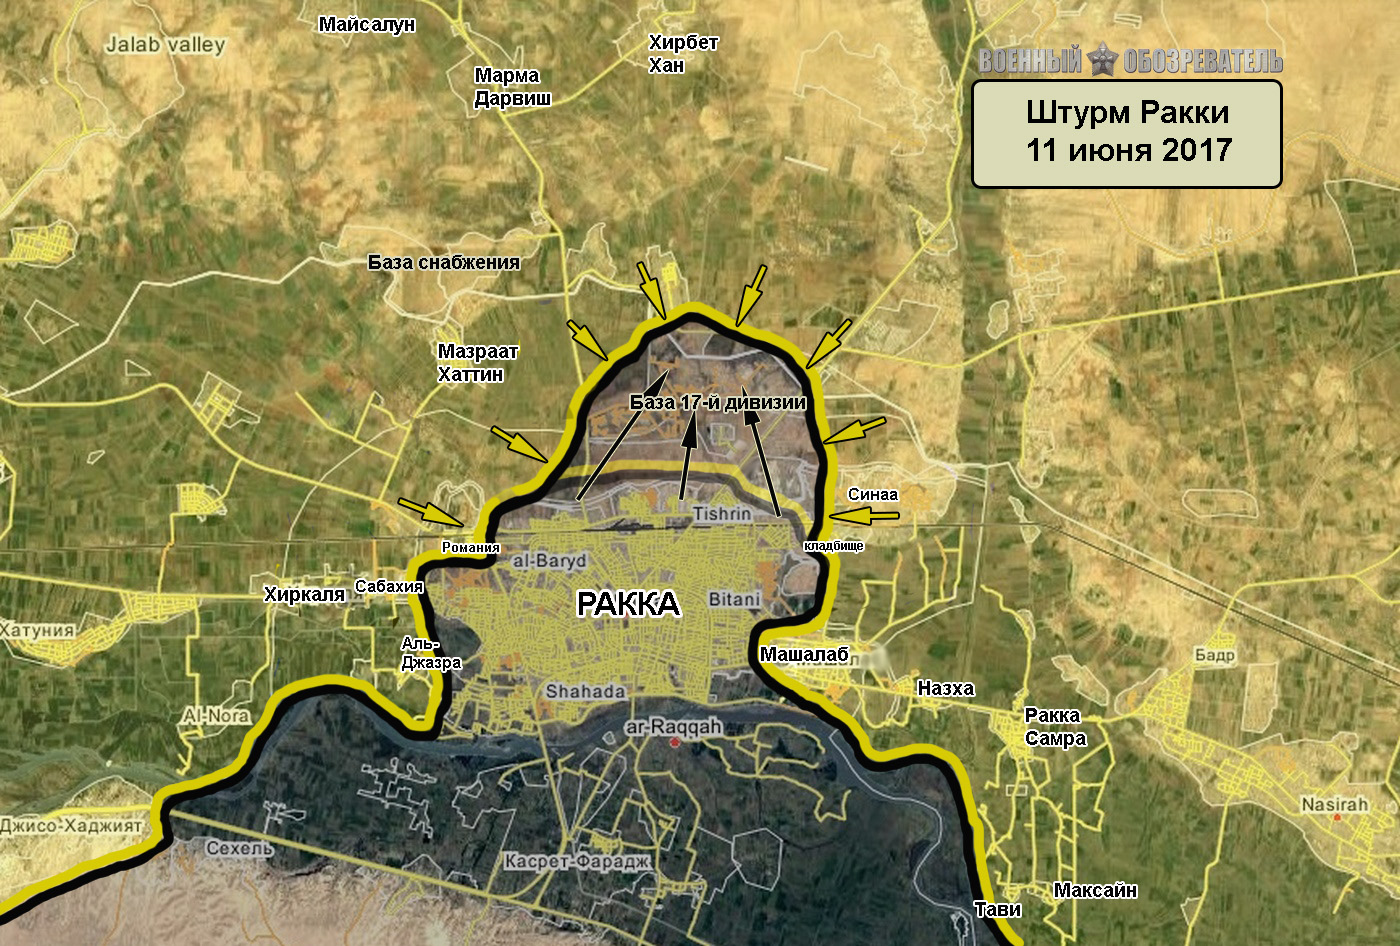 Исламское государство отбило базу 17-й дивизии севернее Ракки